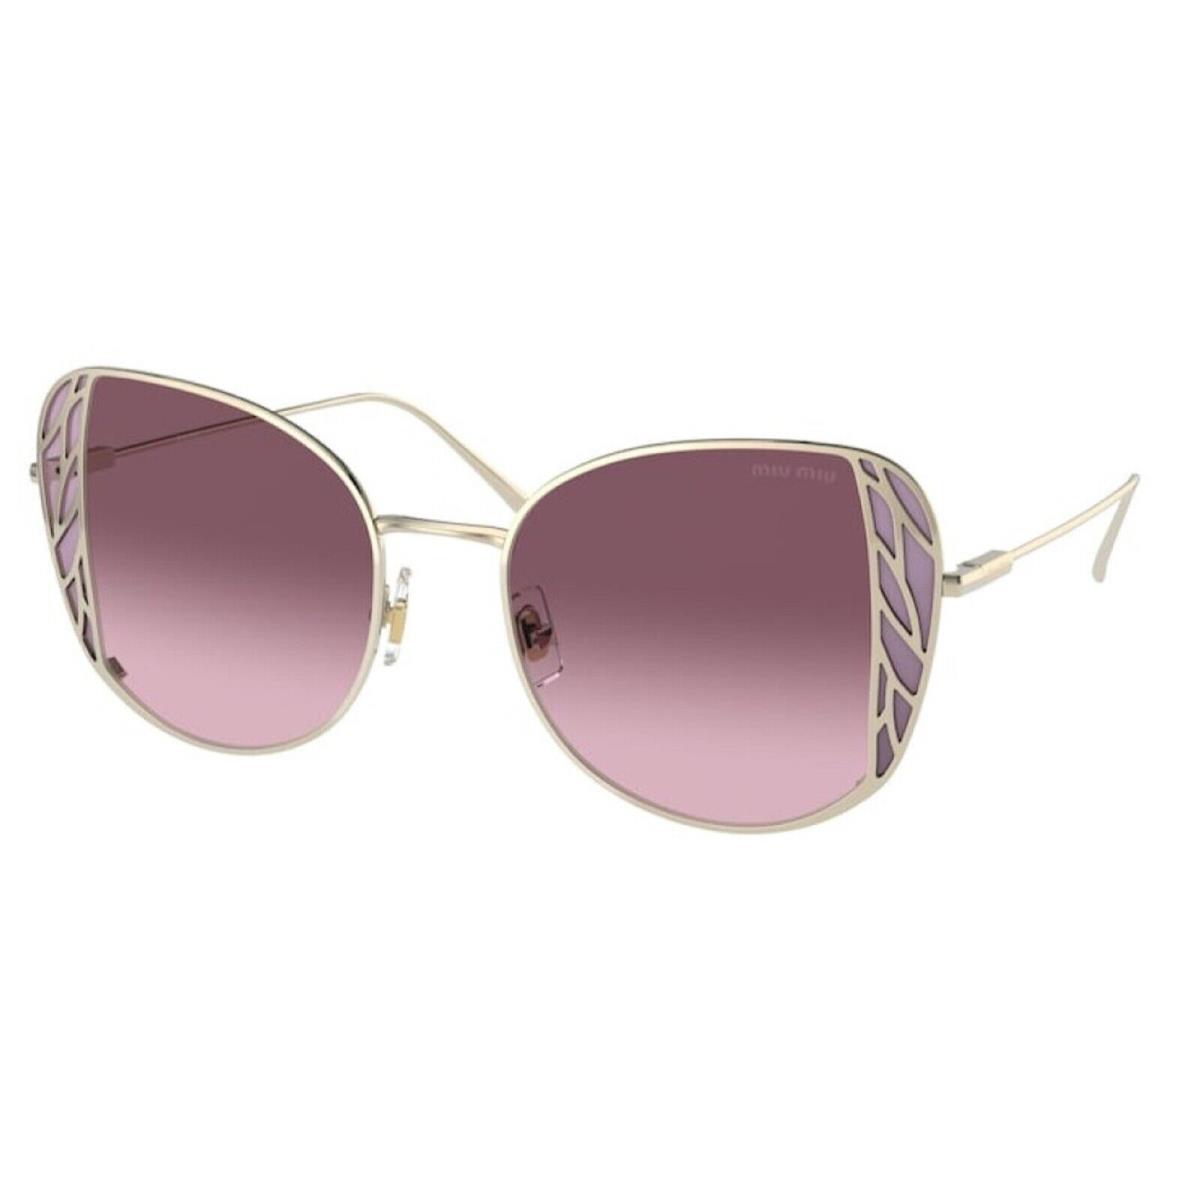 Womens Miu Miu MU 57XS Sunglasses - Gold/pink Gradient 52mm